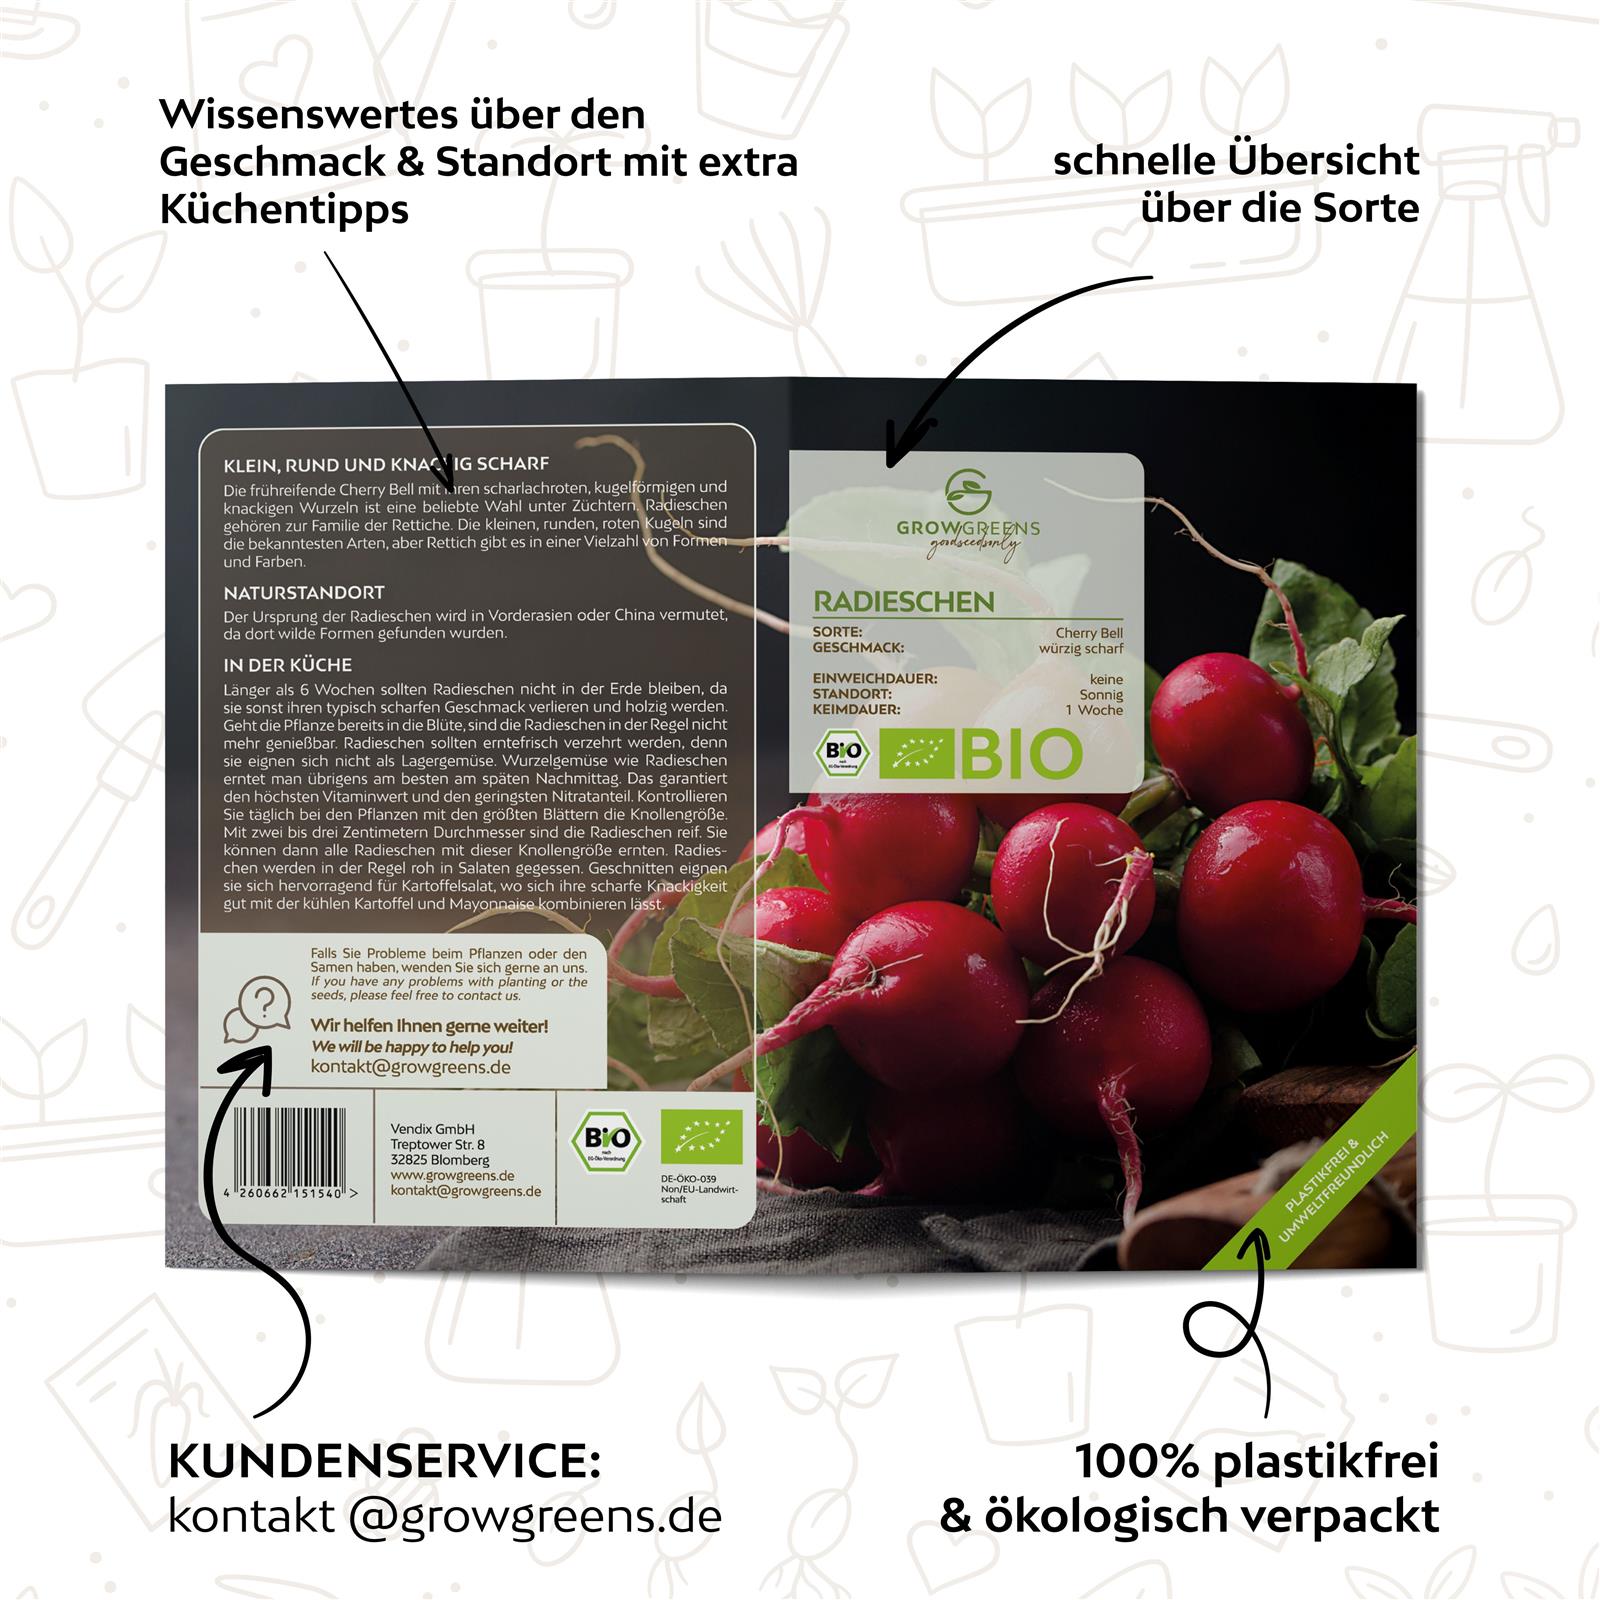 BIO Radieschen Samen (Cherry Bell) - Radieschen Saatgut aus biologischem Anbau (50 Korn)